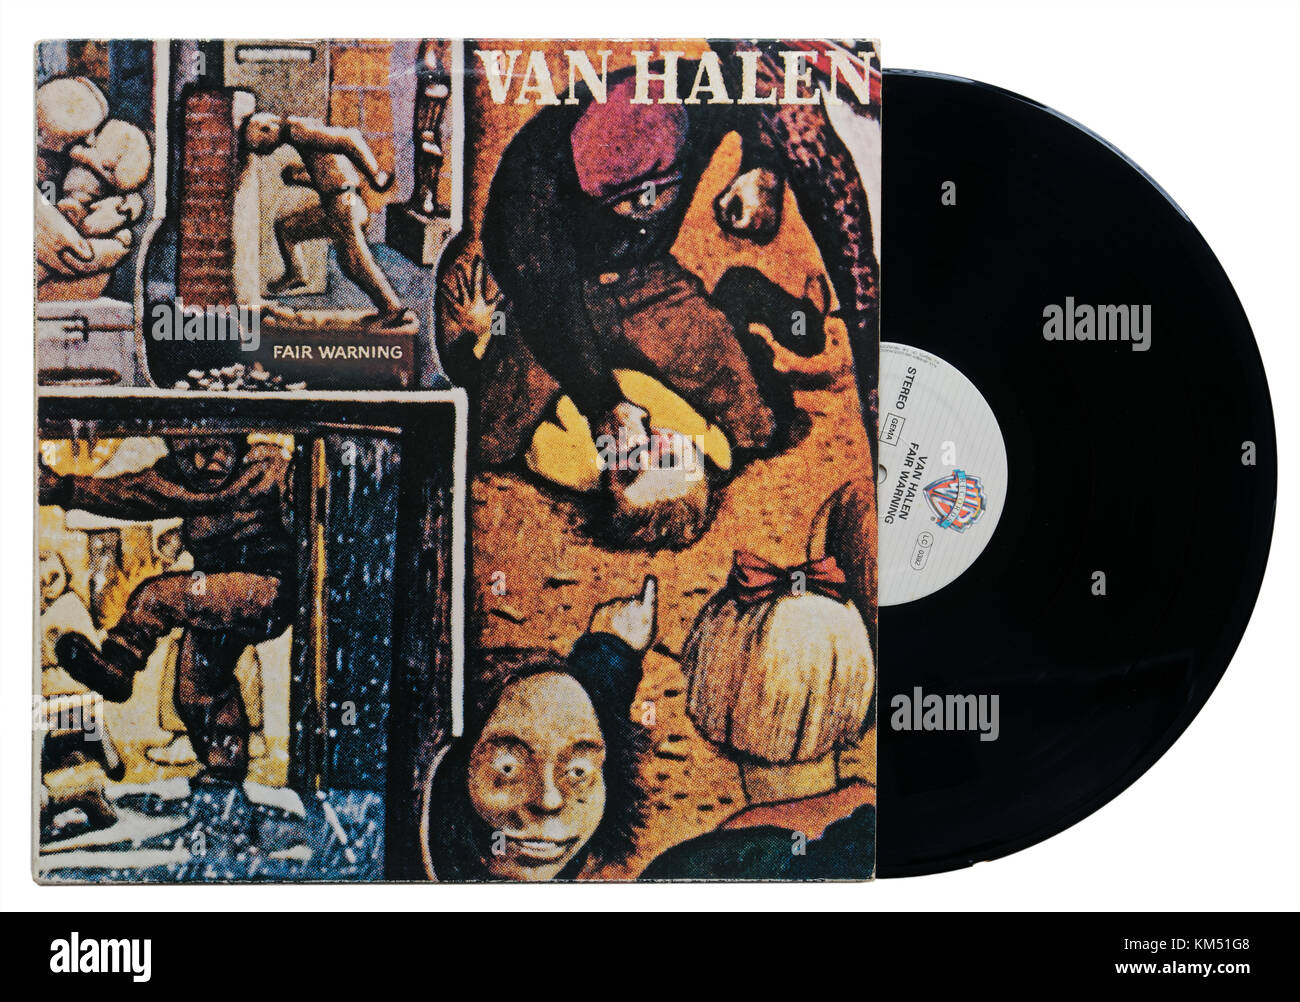 Van Halen Fair Warning album Stock Photo